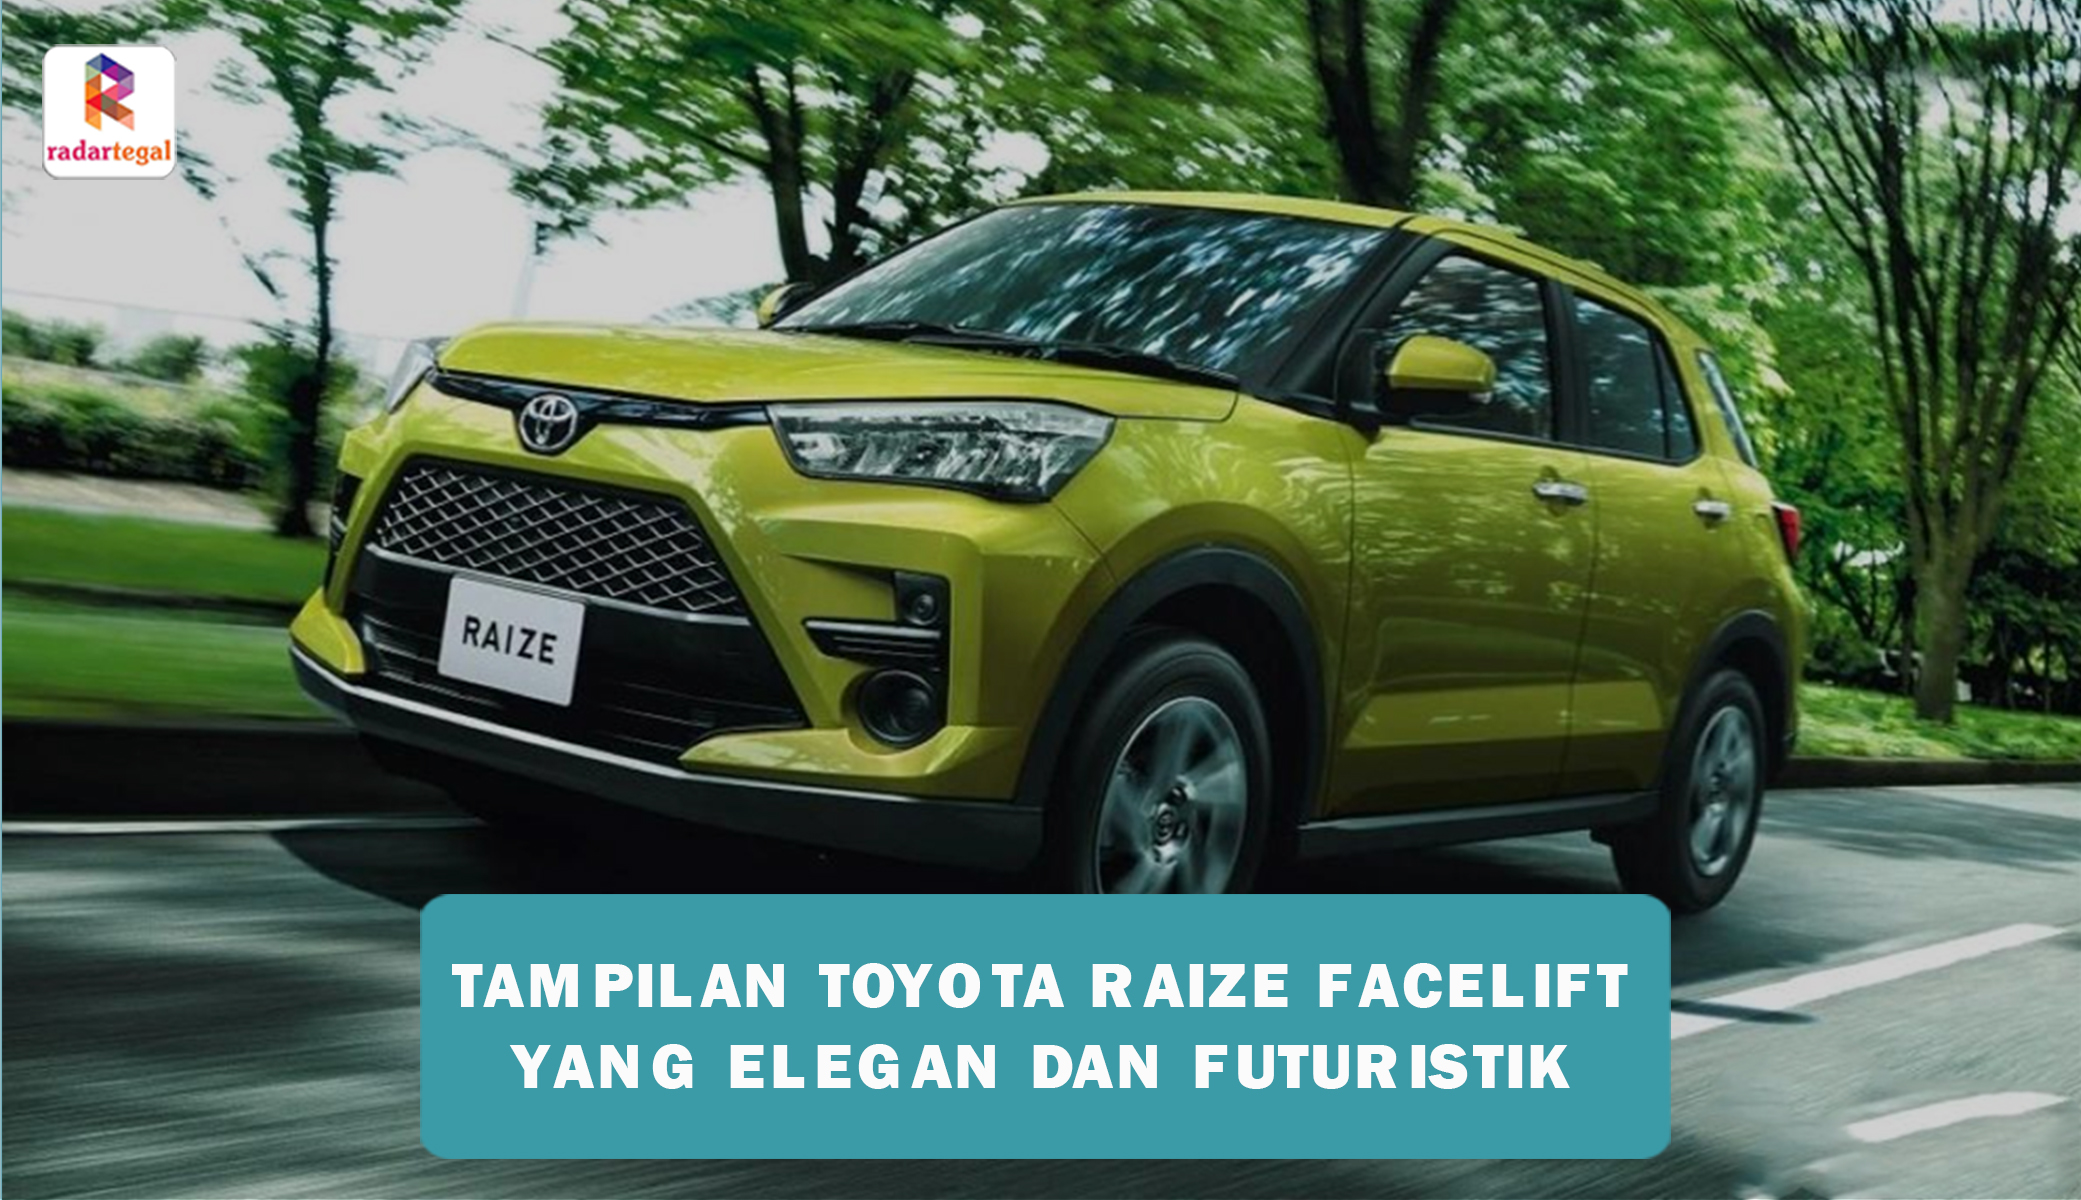 Tampilan Toyota Raize Facelift Alami Pembaruan Elegan yang Lebih Futuristik, Begini Penampakannya